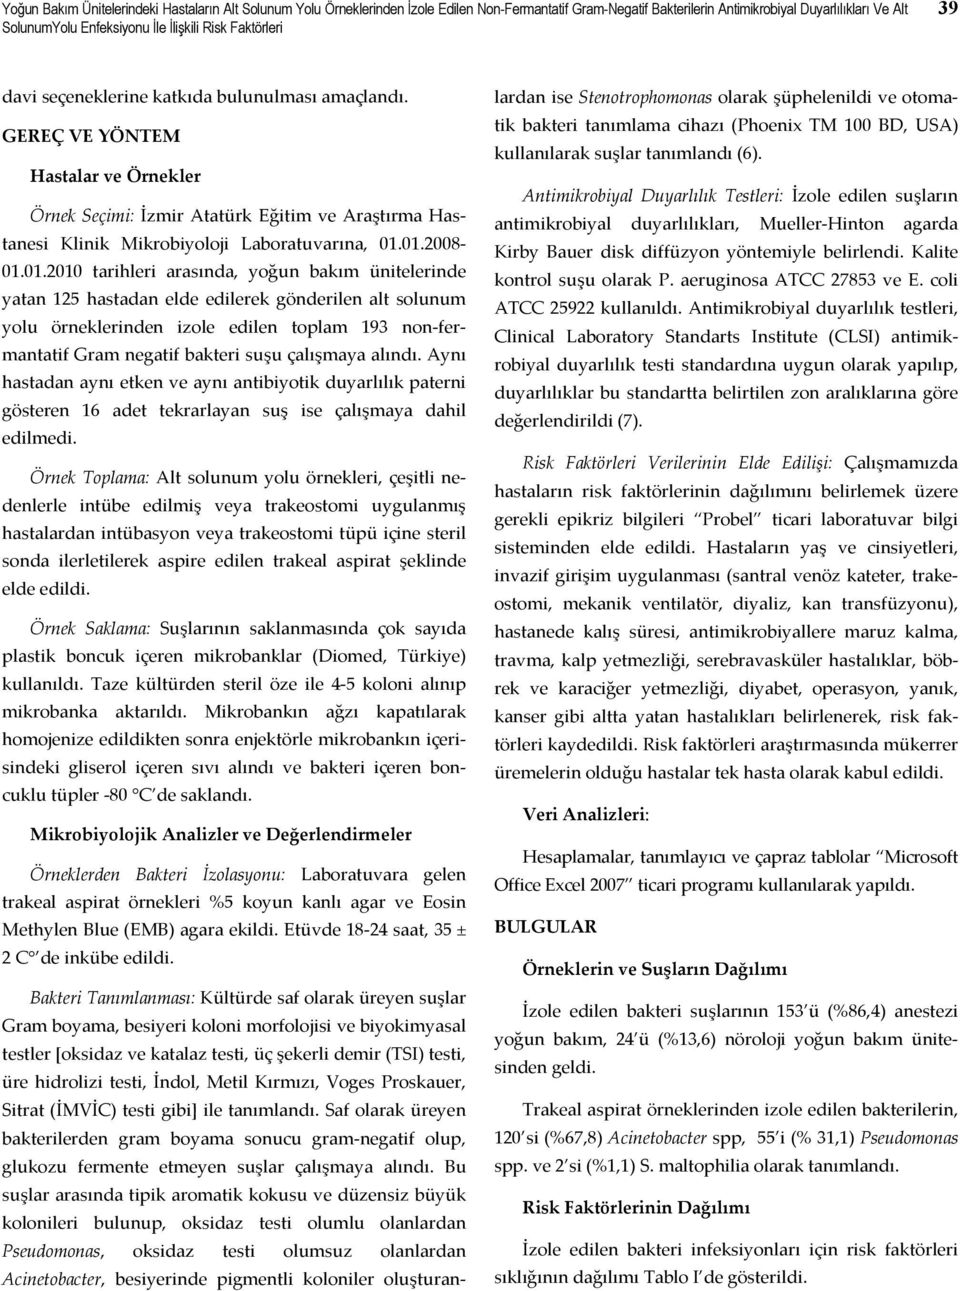 GEREÇ VE YÖNTEM Hastalar ve Örnekler Örnek Seçimi: İzmir Atatürk Eğitim ve Araştırma Hastanesi Klinik Mikrobiyoloji Laboratuvarına, 01.